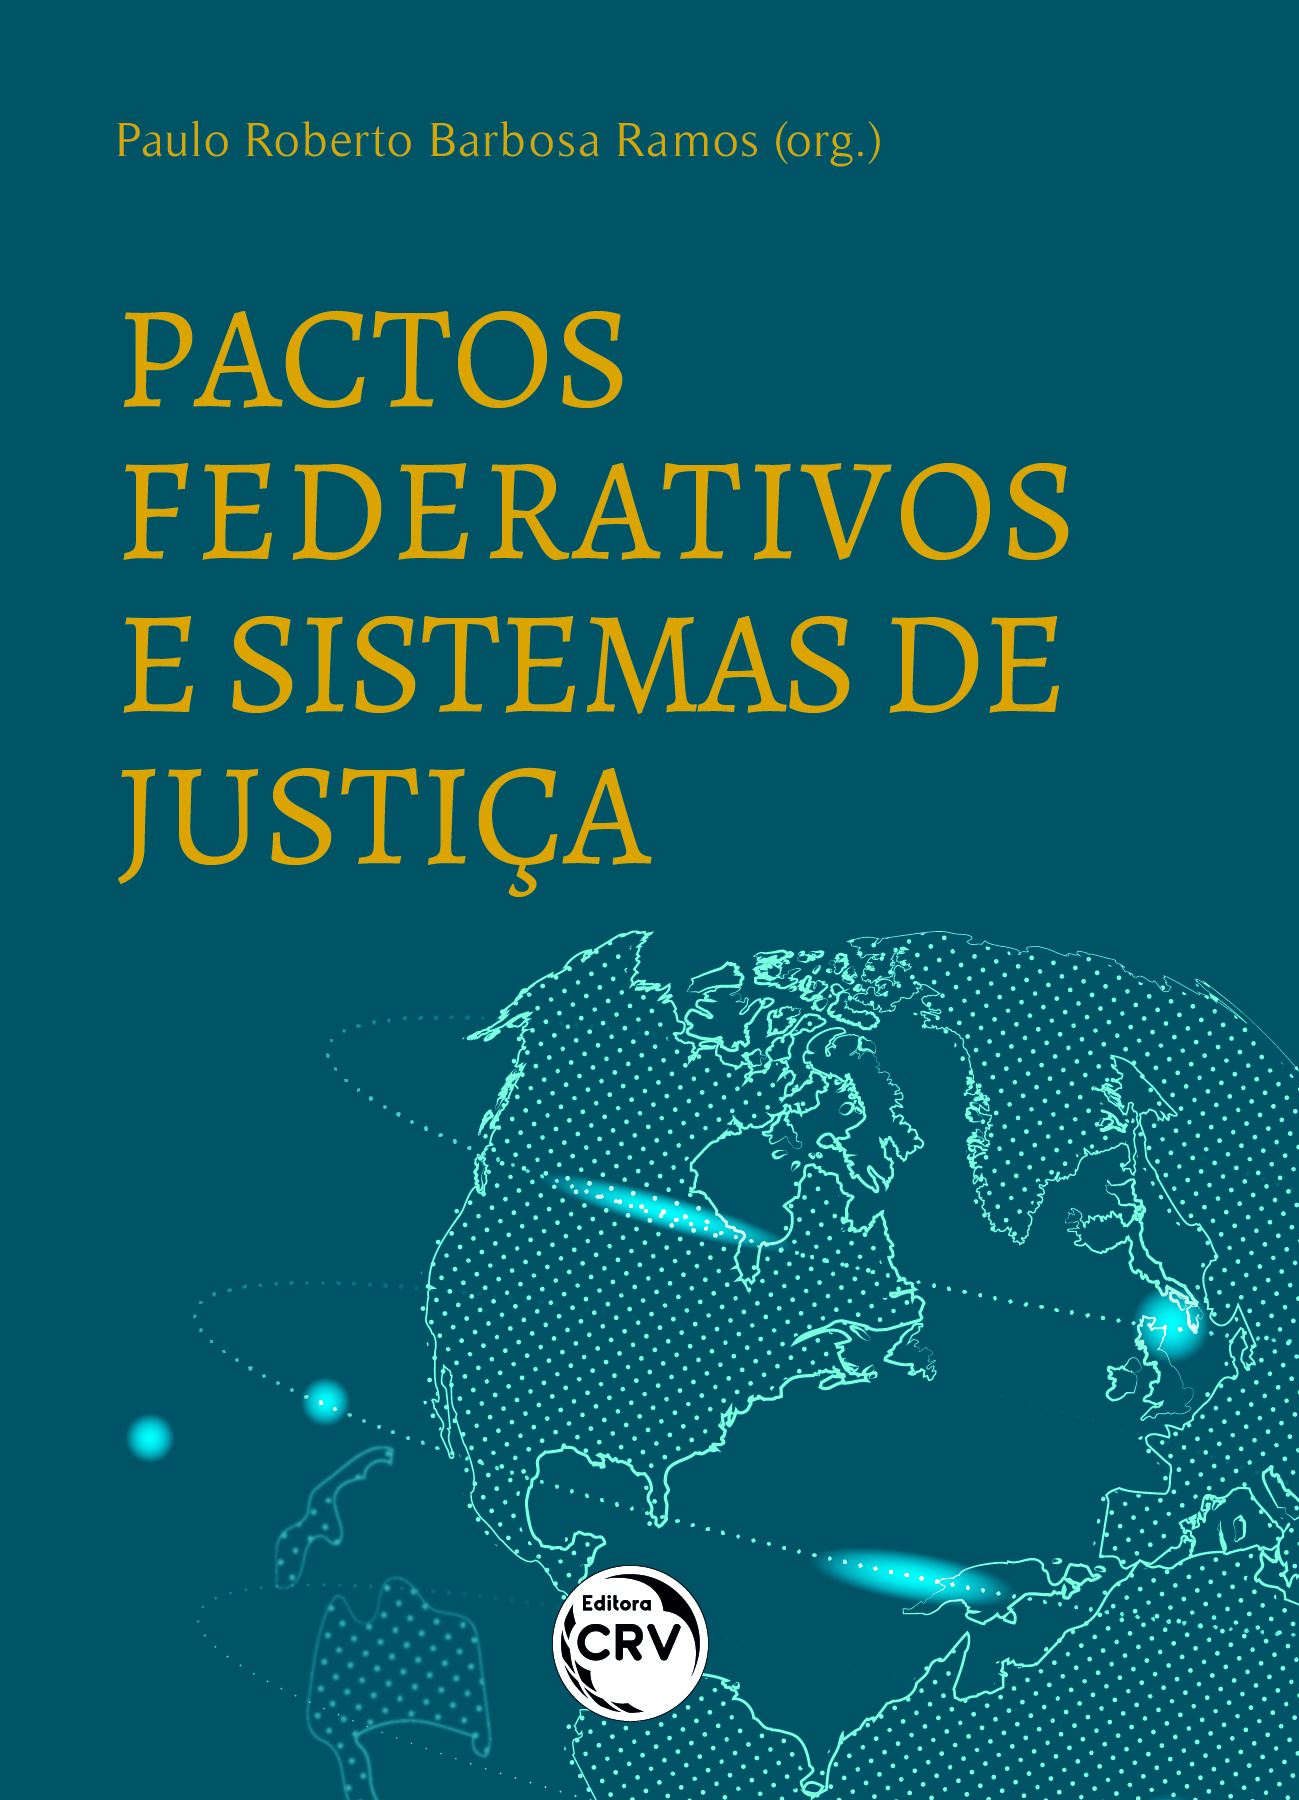 PPGDIR da UFMA lança livro sobre Pactos Federativos e Sistemas de Justiça